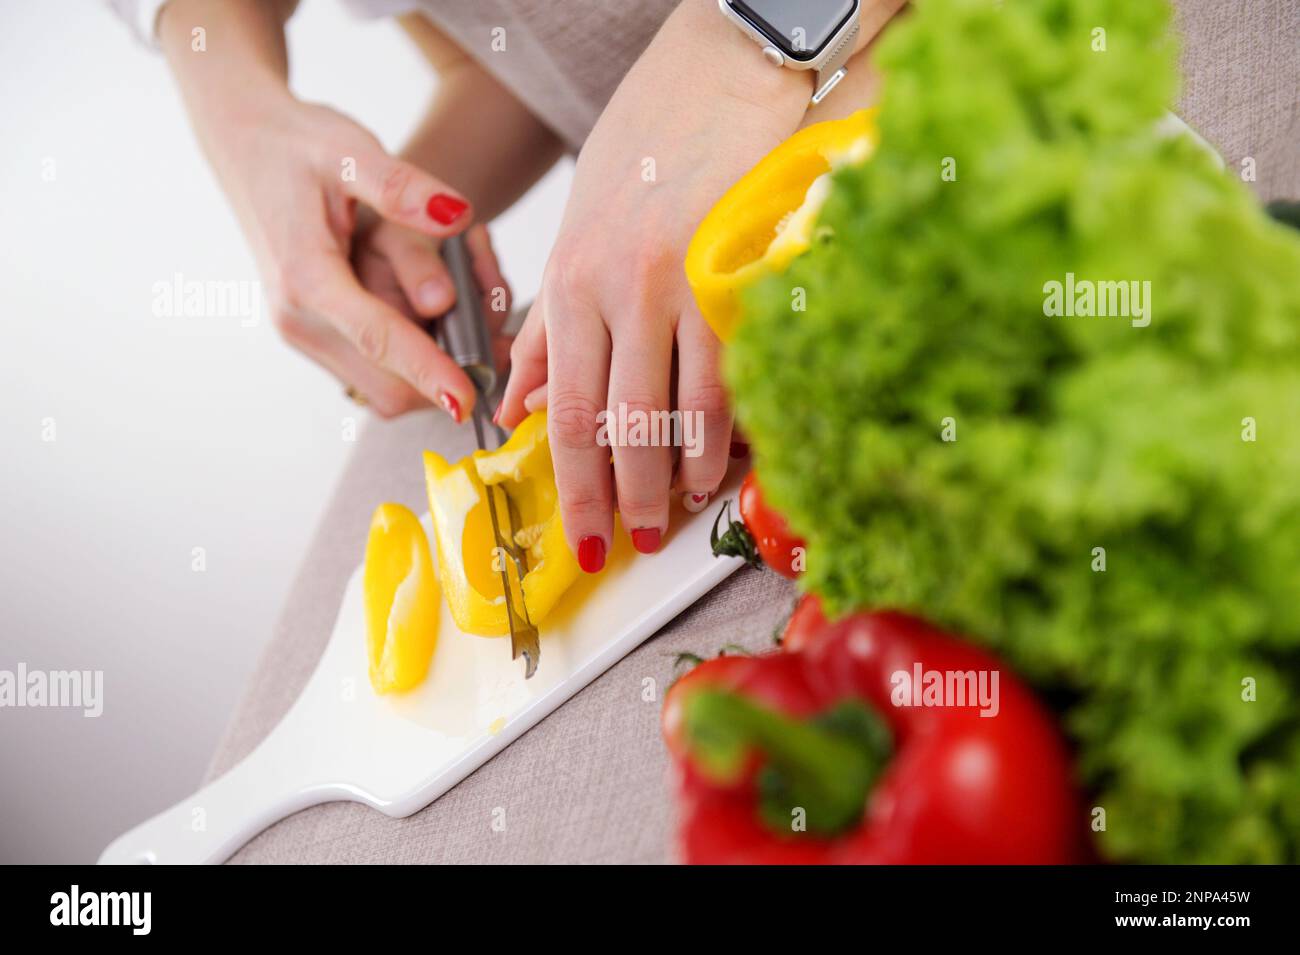 l'adulto insegna al bambino a tagliare le verdure madre aiuta il figlio a tagliare il peperone giallo primo piano mani coltello porcellana whiteboard verdure sane primi passi in cucina formazione Foto Stock